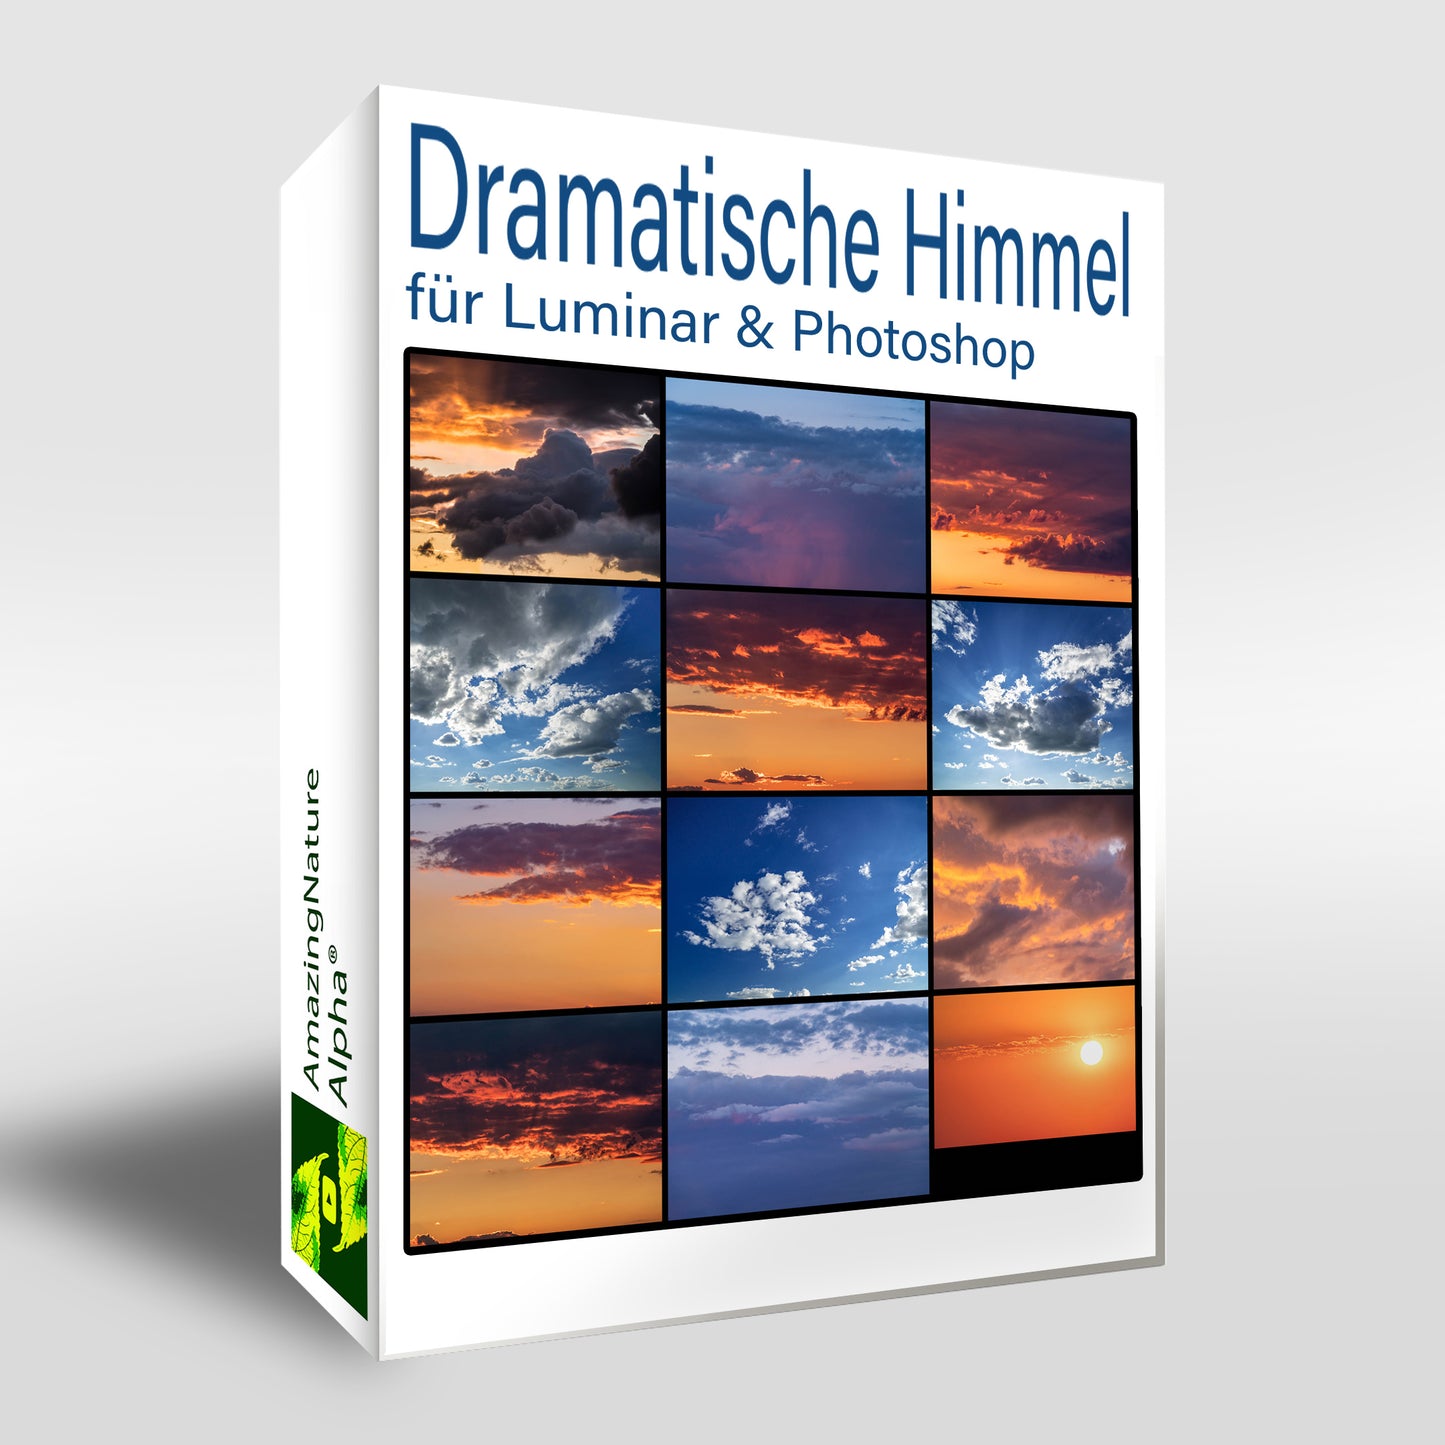 Dramatische Himmel für Luminar & Photoshop | 20 stk.